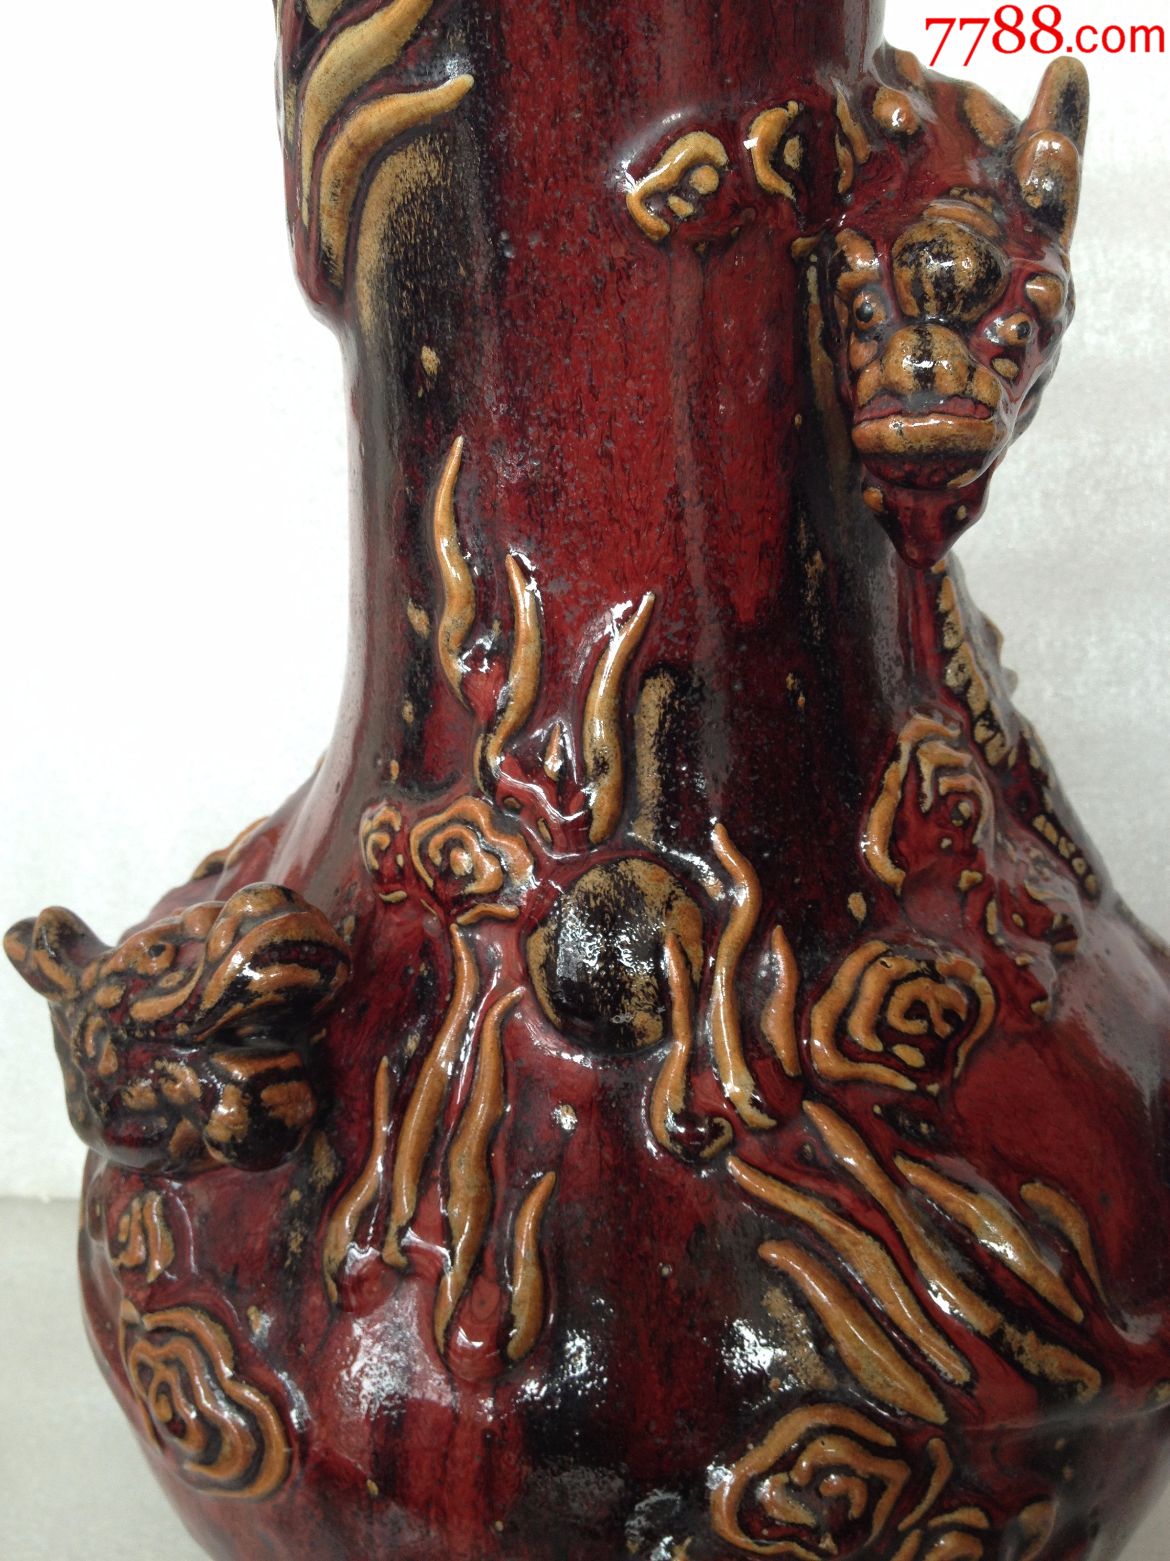 石湾老红釉赏瓶图片